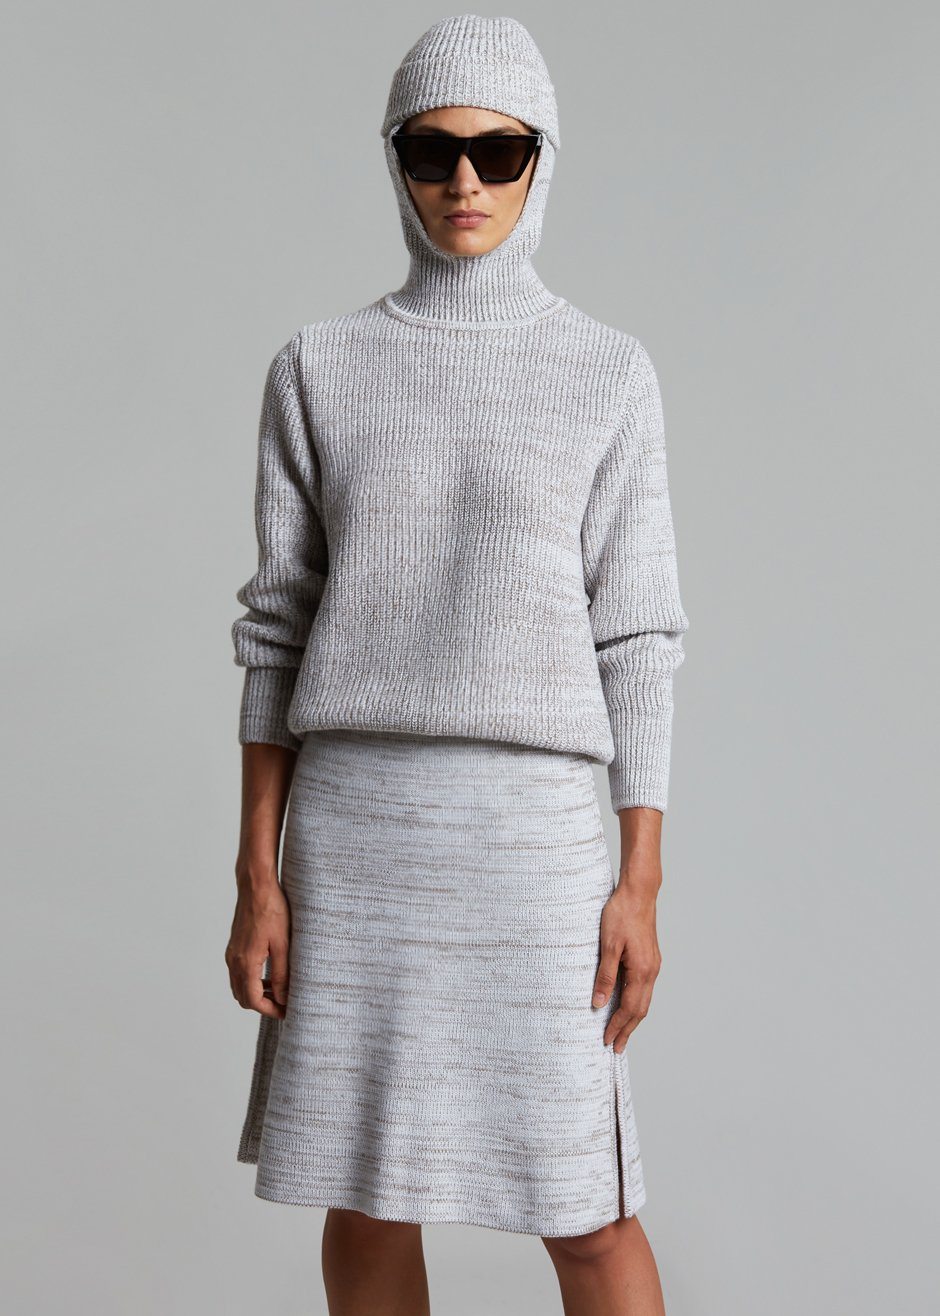 Bevza Knitted Skirt - Light Beige Melange